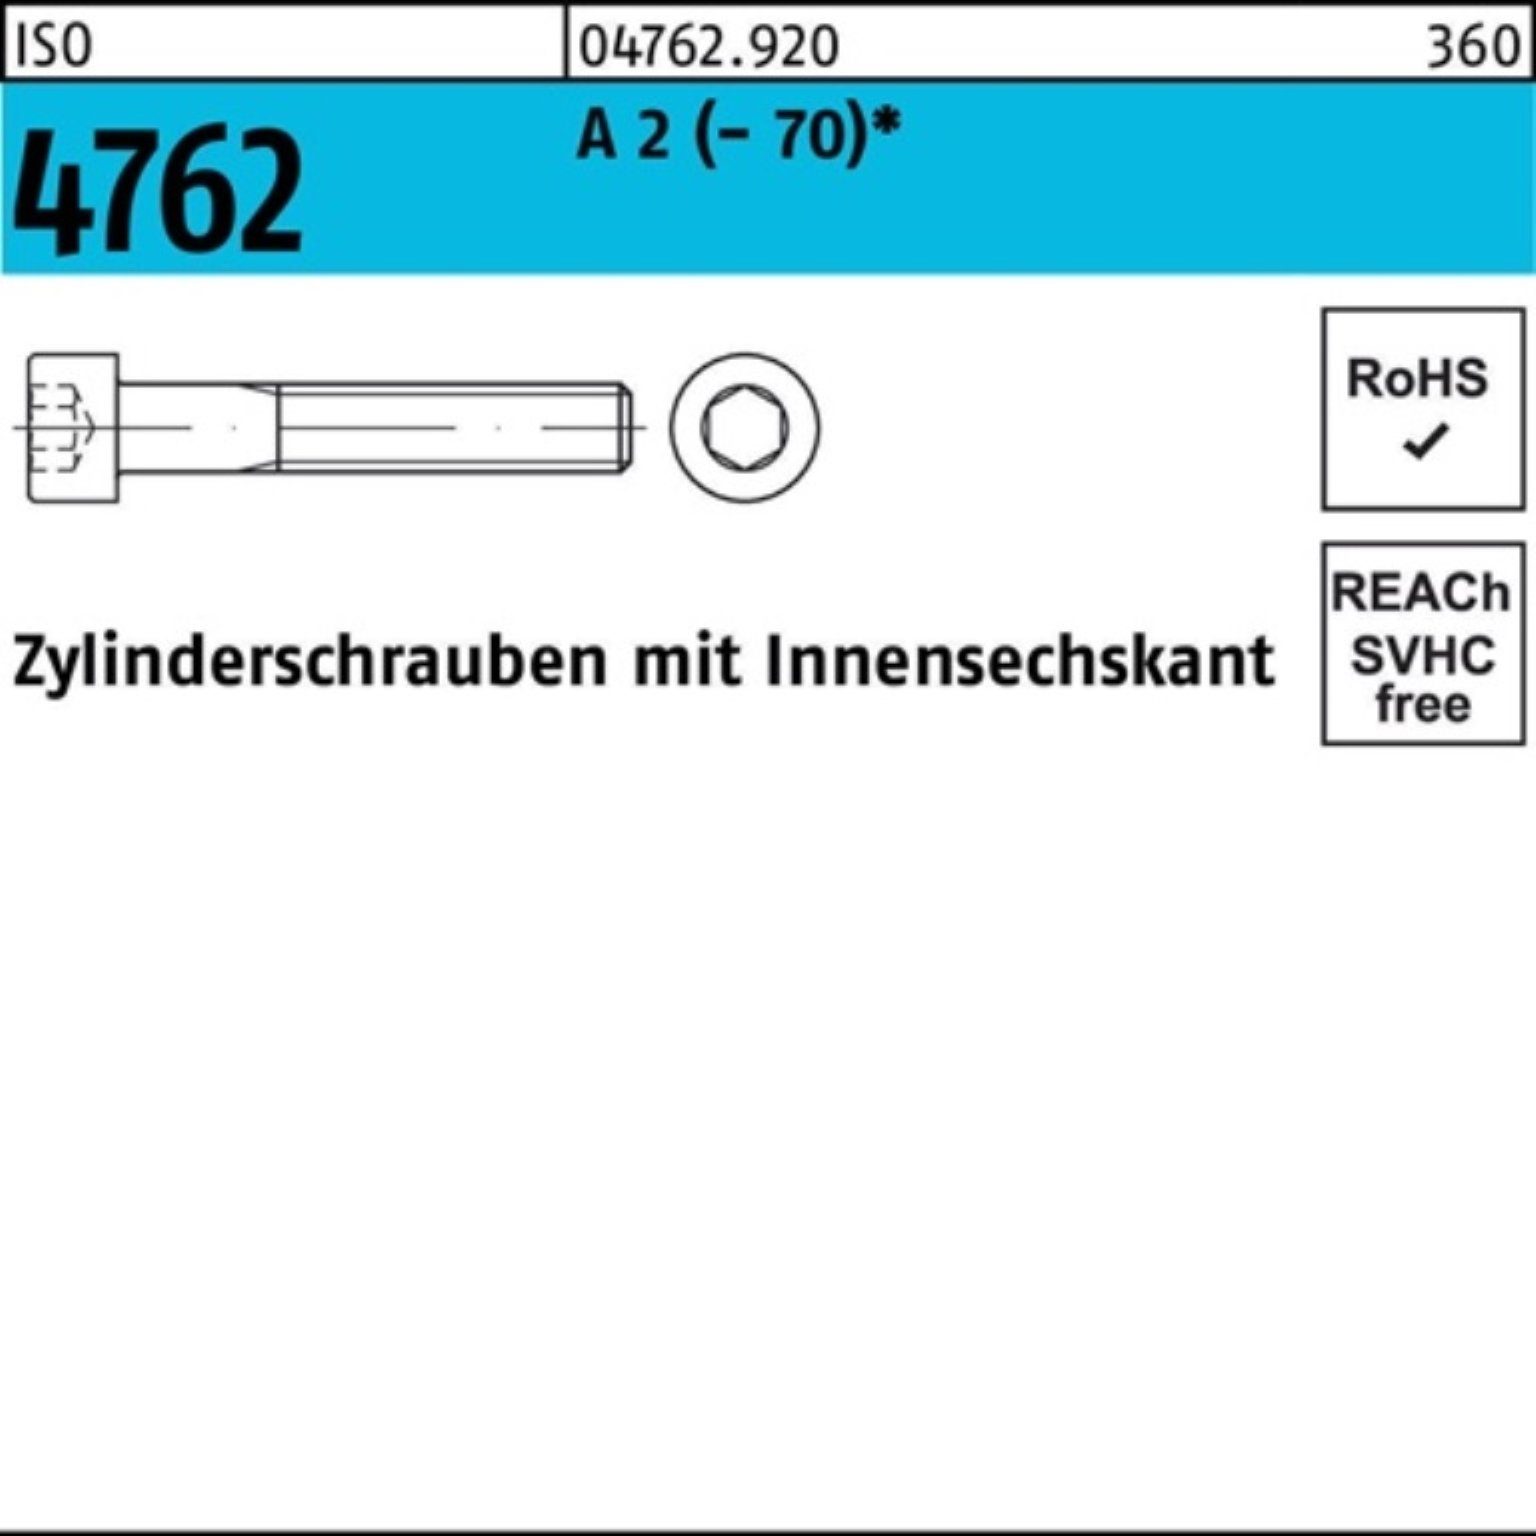 2 S Zylinderschraube 100er Reyher (70) 4762 1 150 ISO Pack Zylinderschraube Innen-6kt M24x A